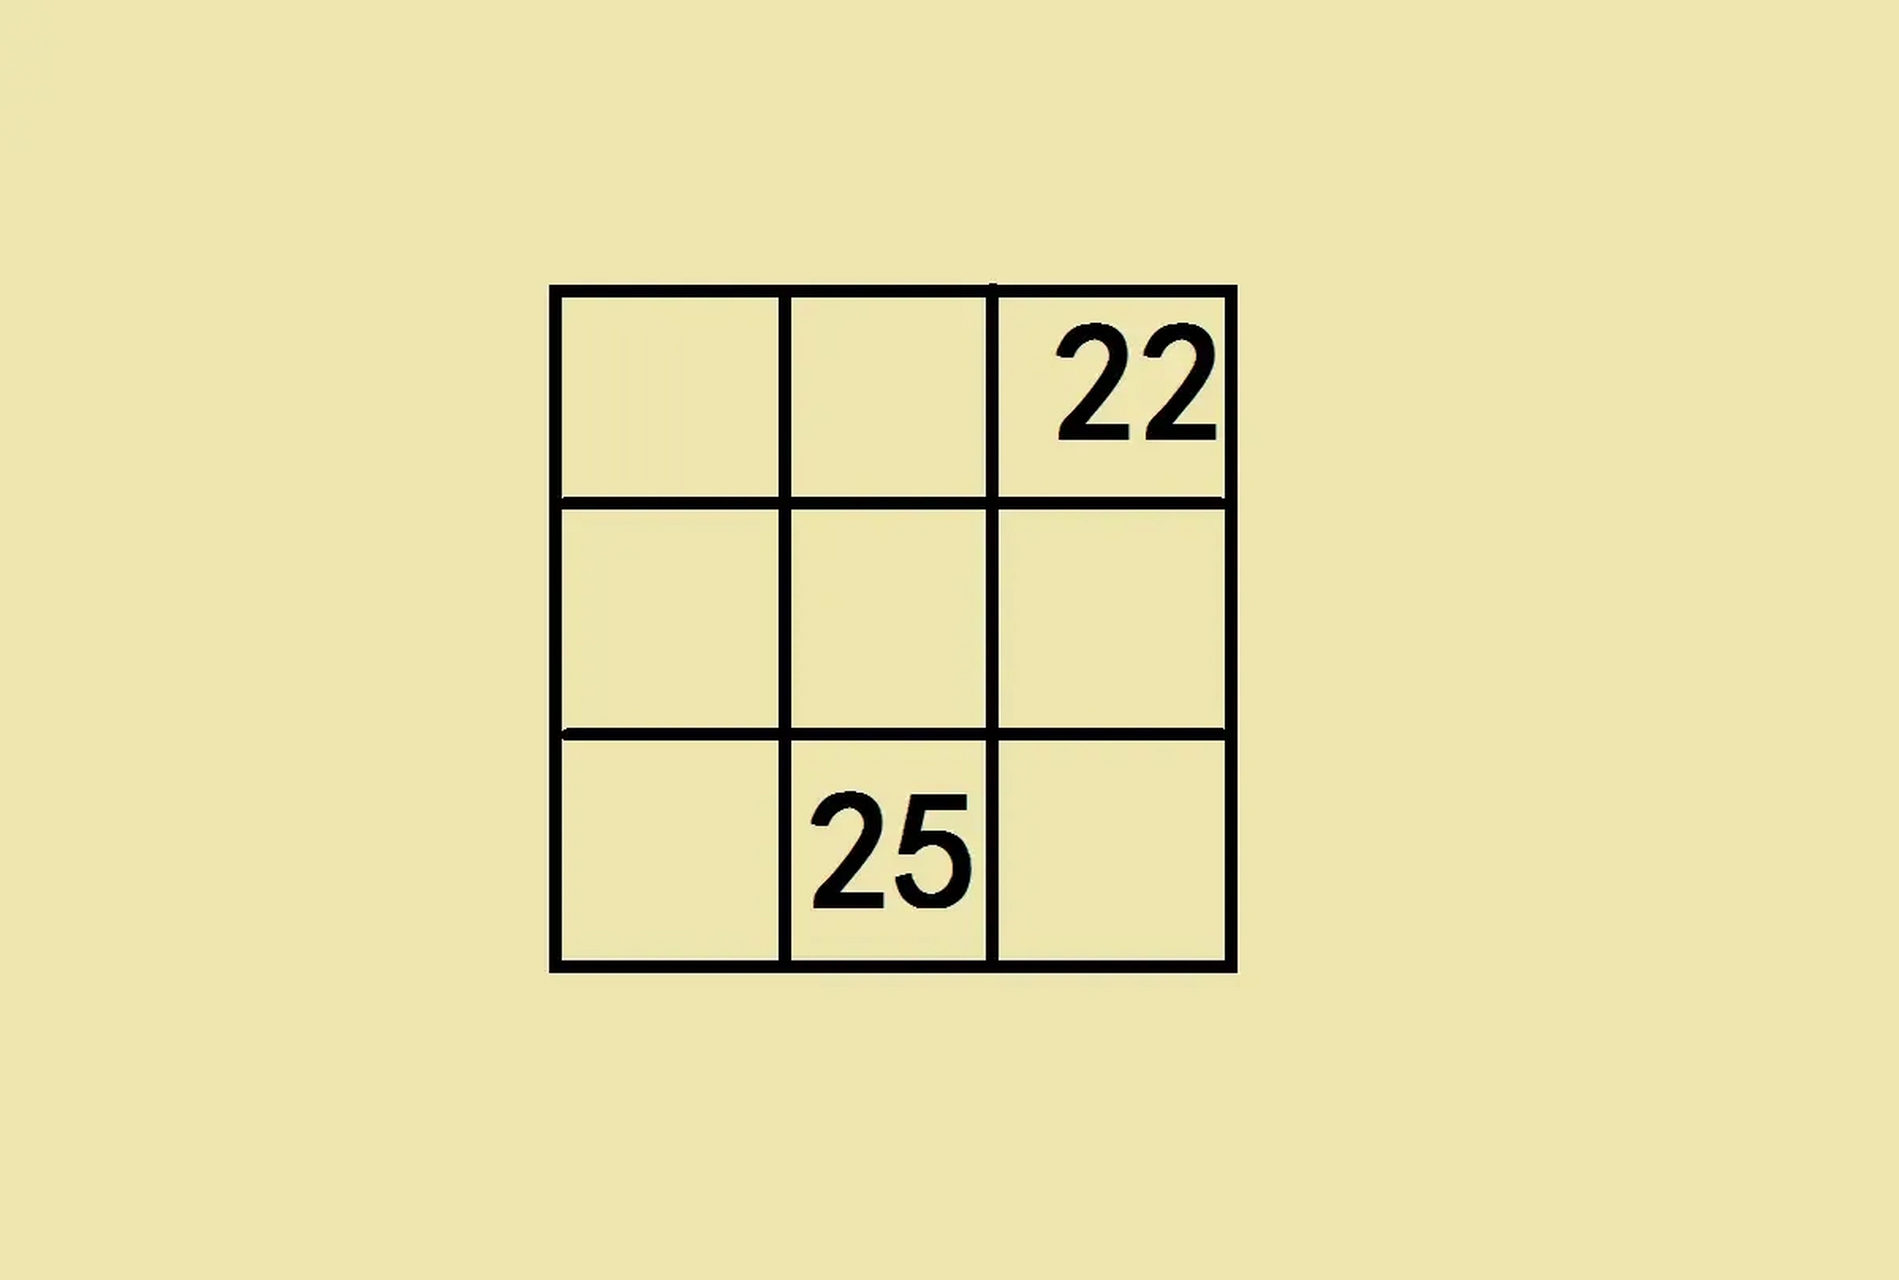 如图是一个九宫格,要求在剩下空格中填数,使每一行,每一列,每一条对角